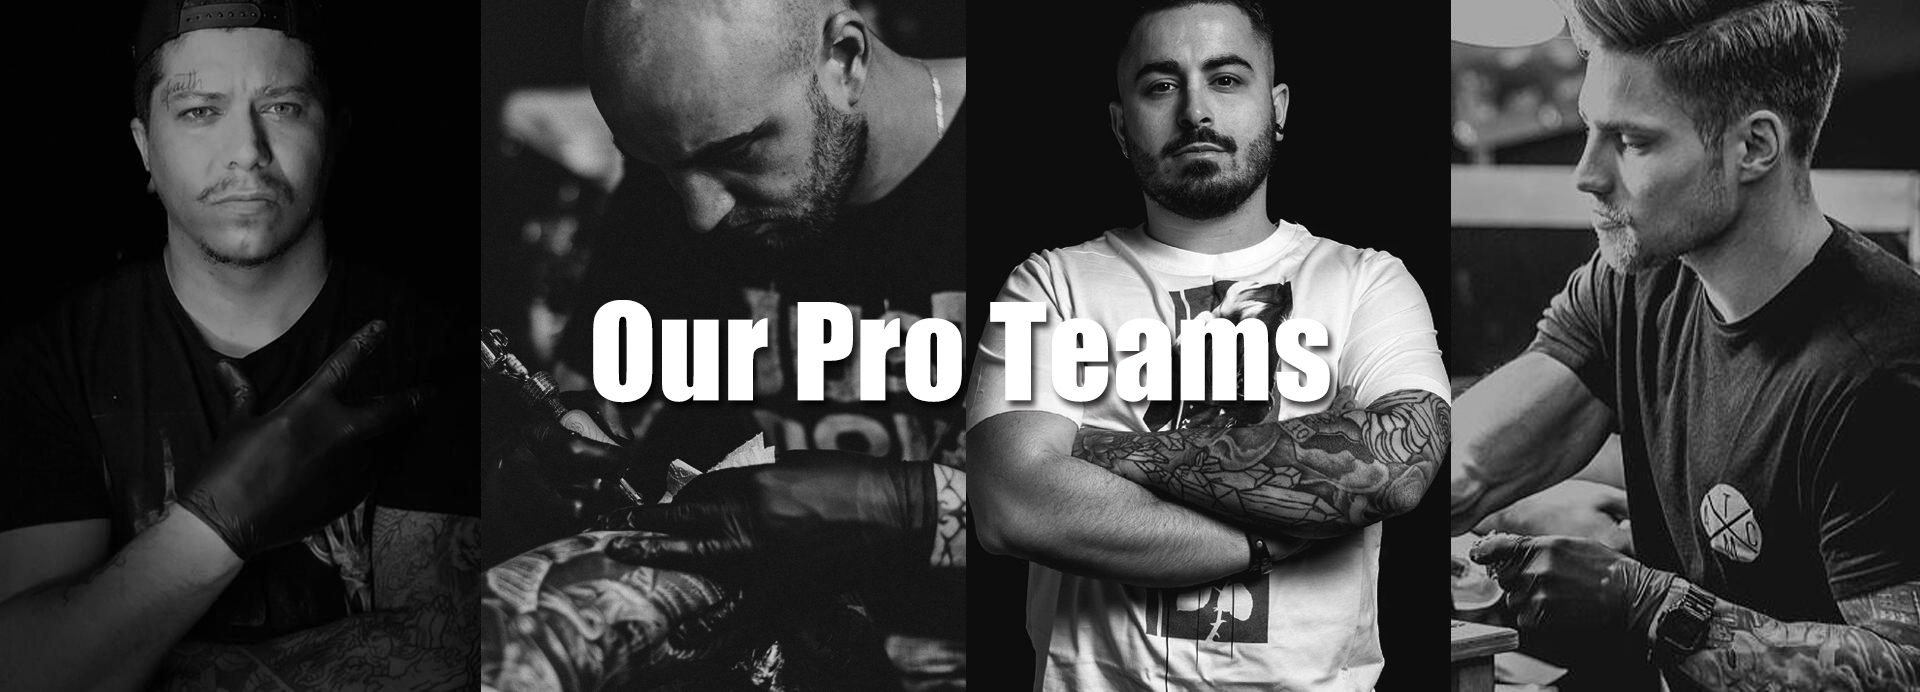 Our Pro Teams